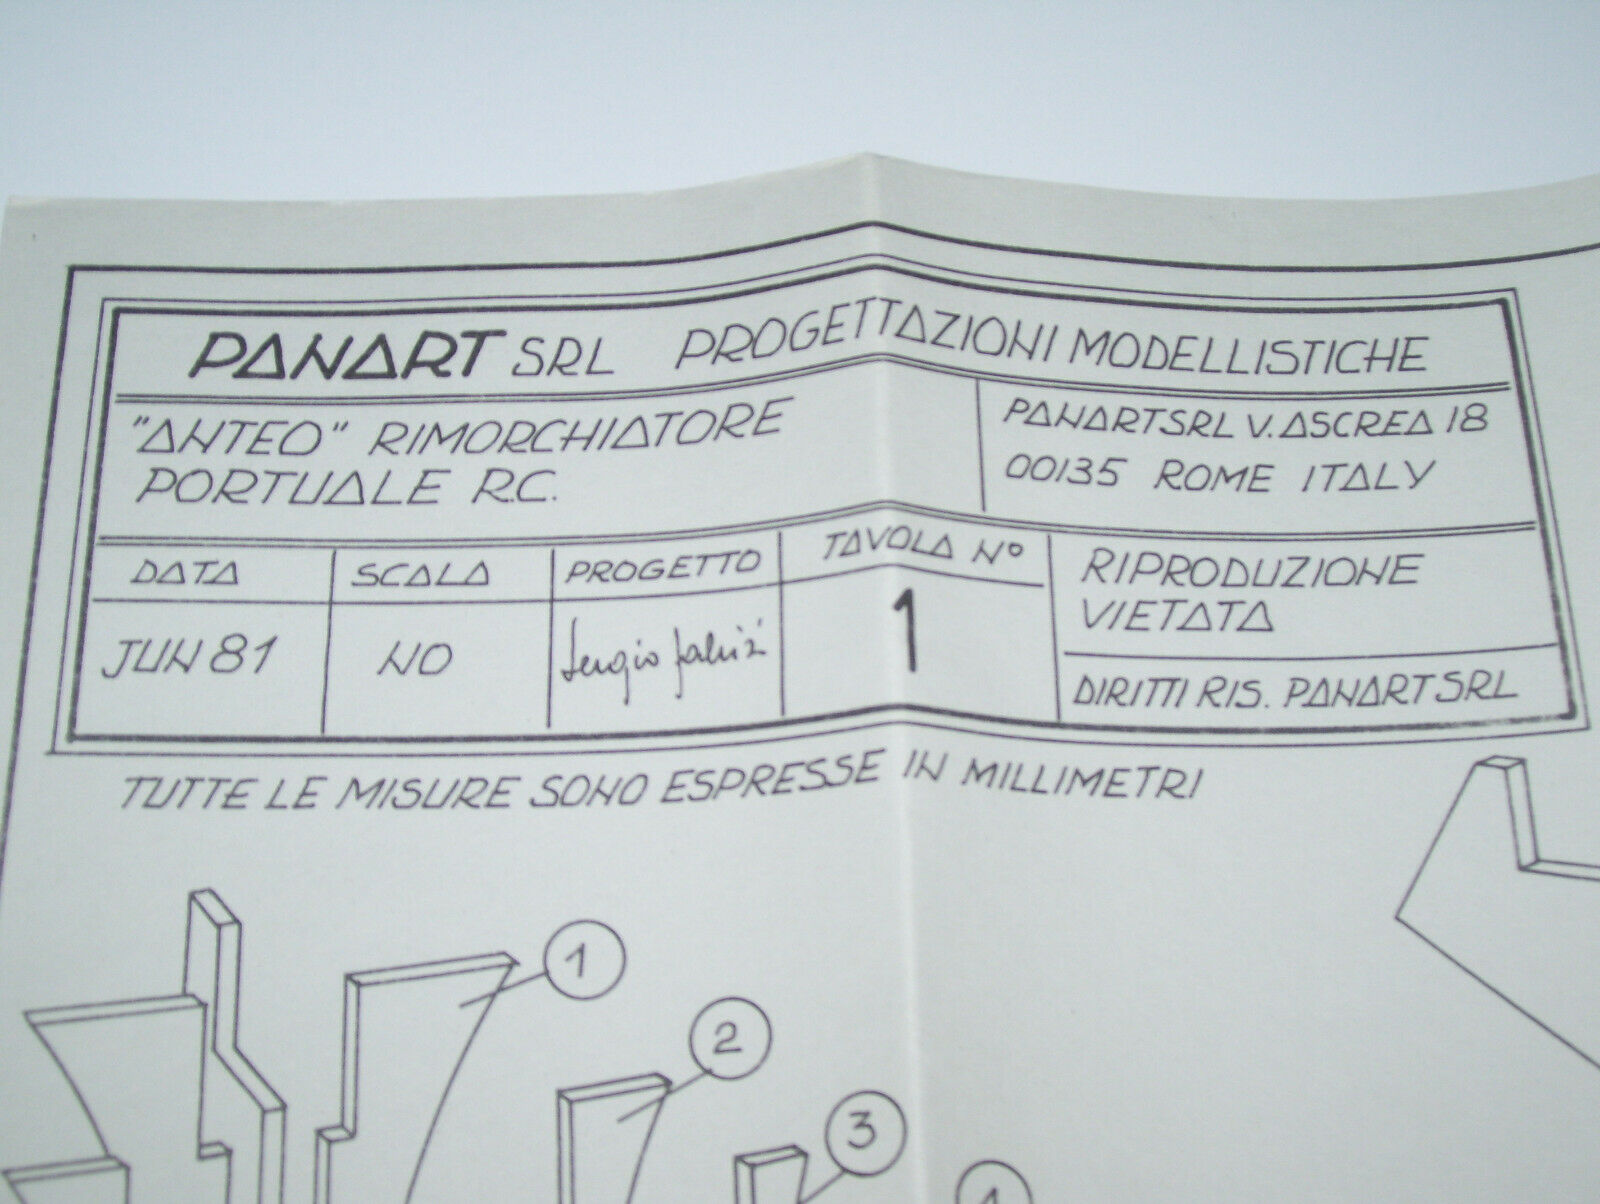 Panart Mantua Anteo Tugboat RC 1/30 Scale PLANS Templates * ITALIAN LANGUAGE *